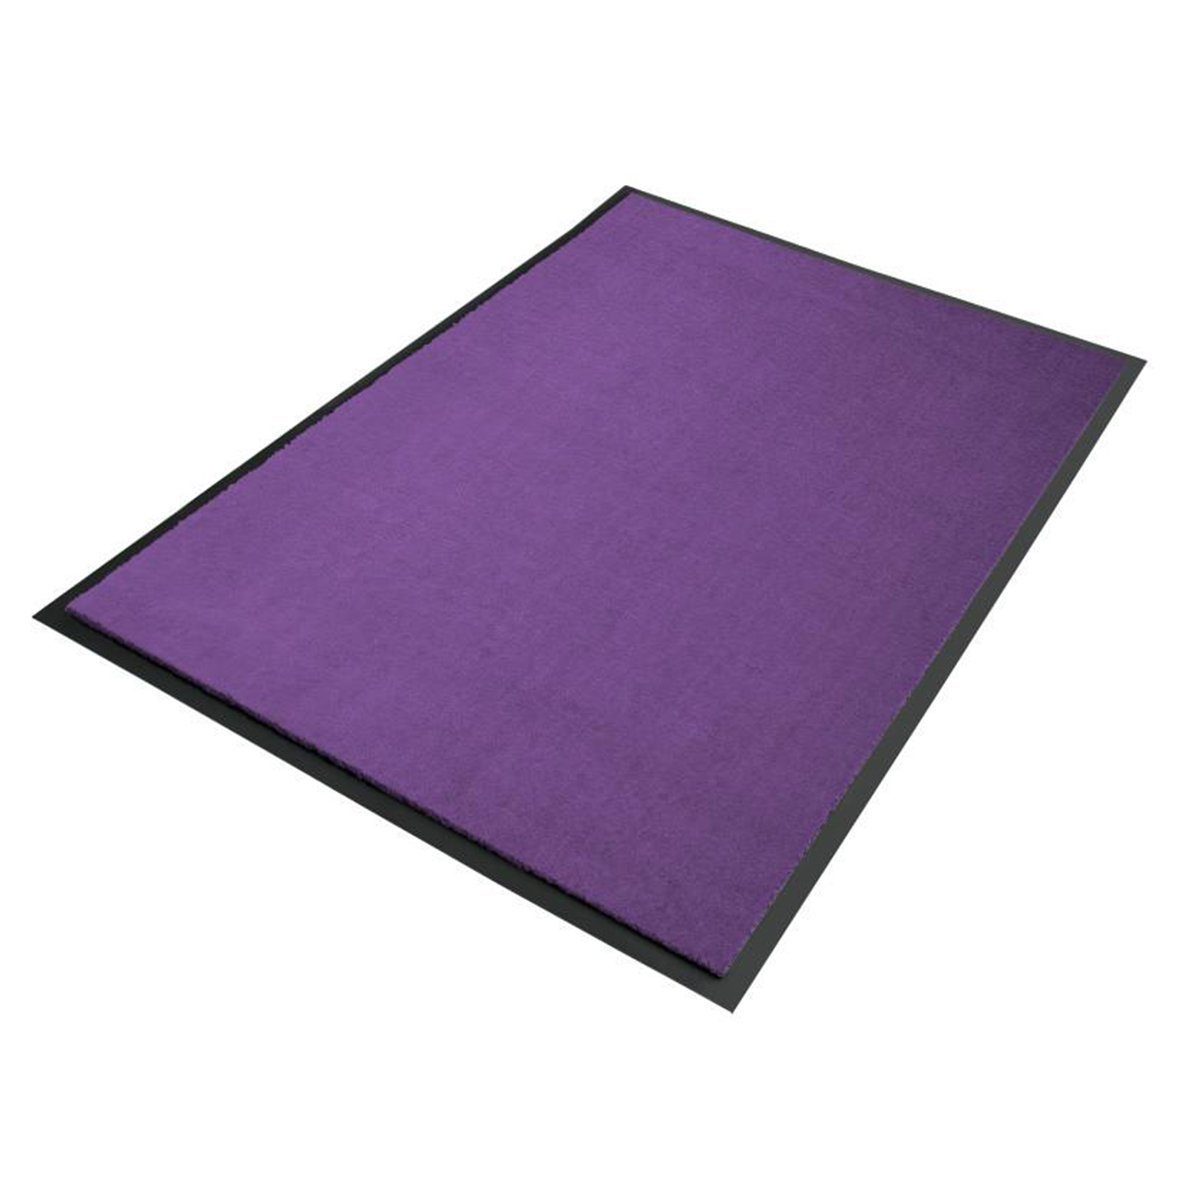 Fußmatte Premium-Schmutzfangmatte B26 Dunkellila, Erhältlich in vielen Größen, Floordirekt, Höhe: 6 mm